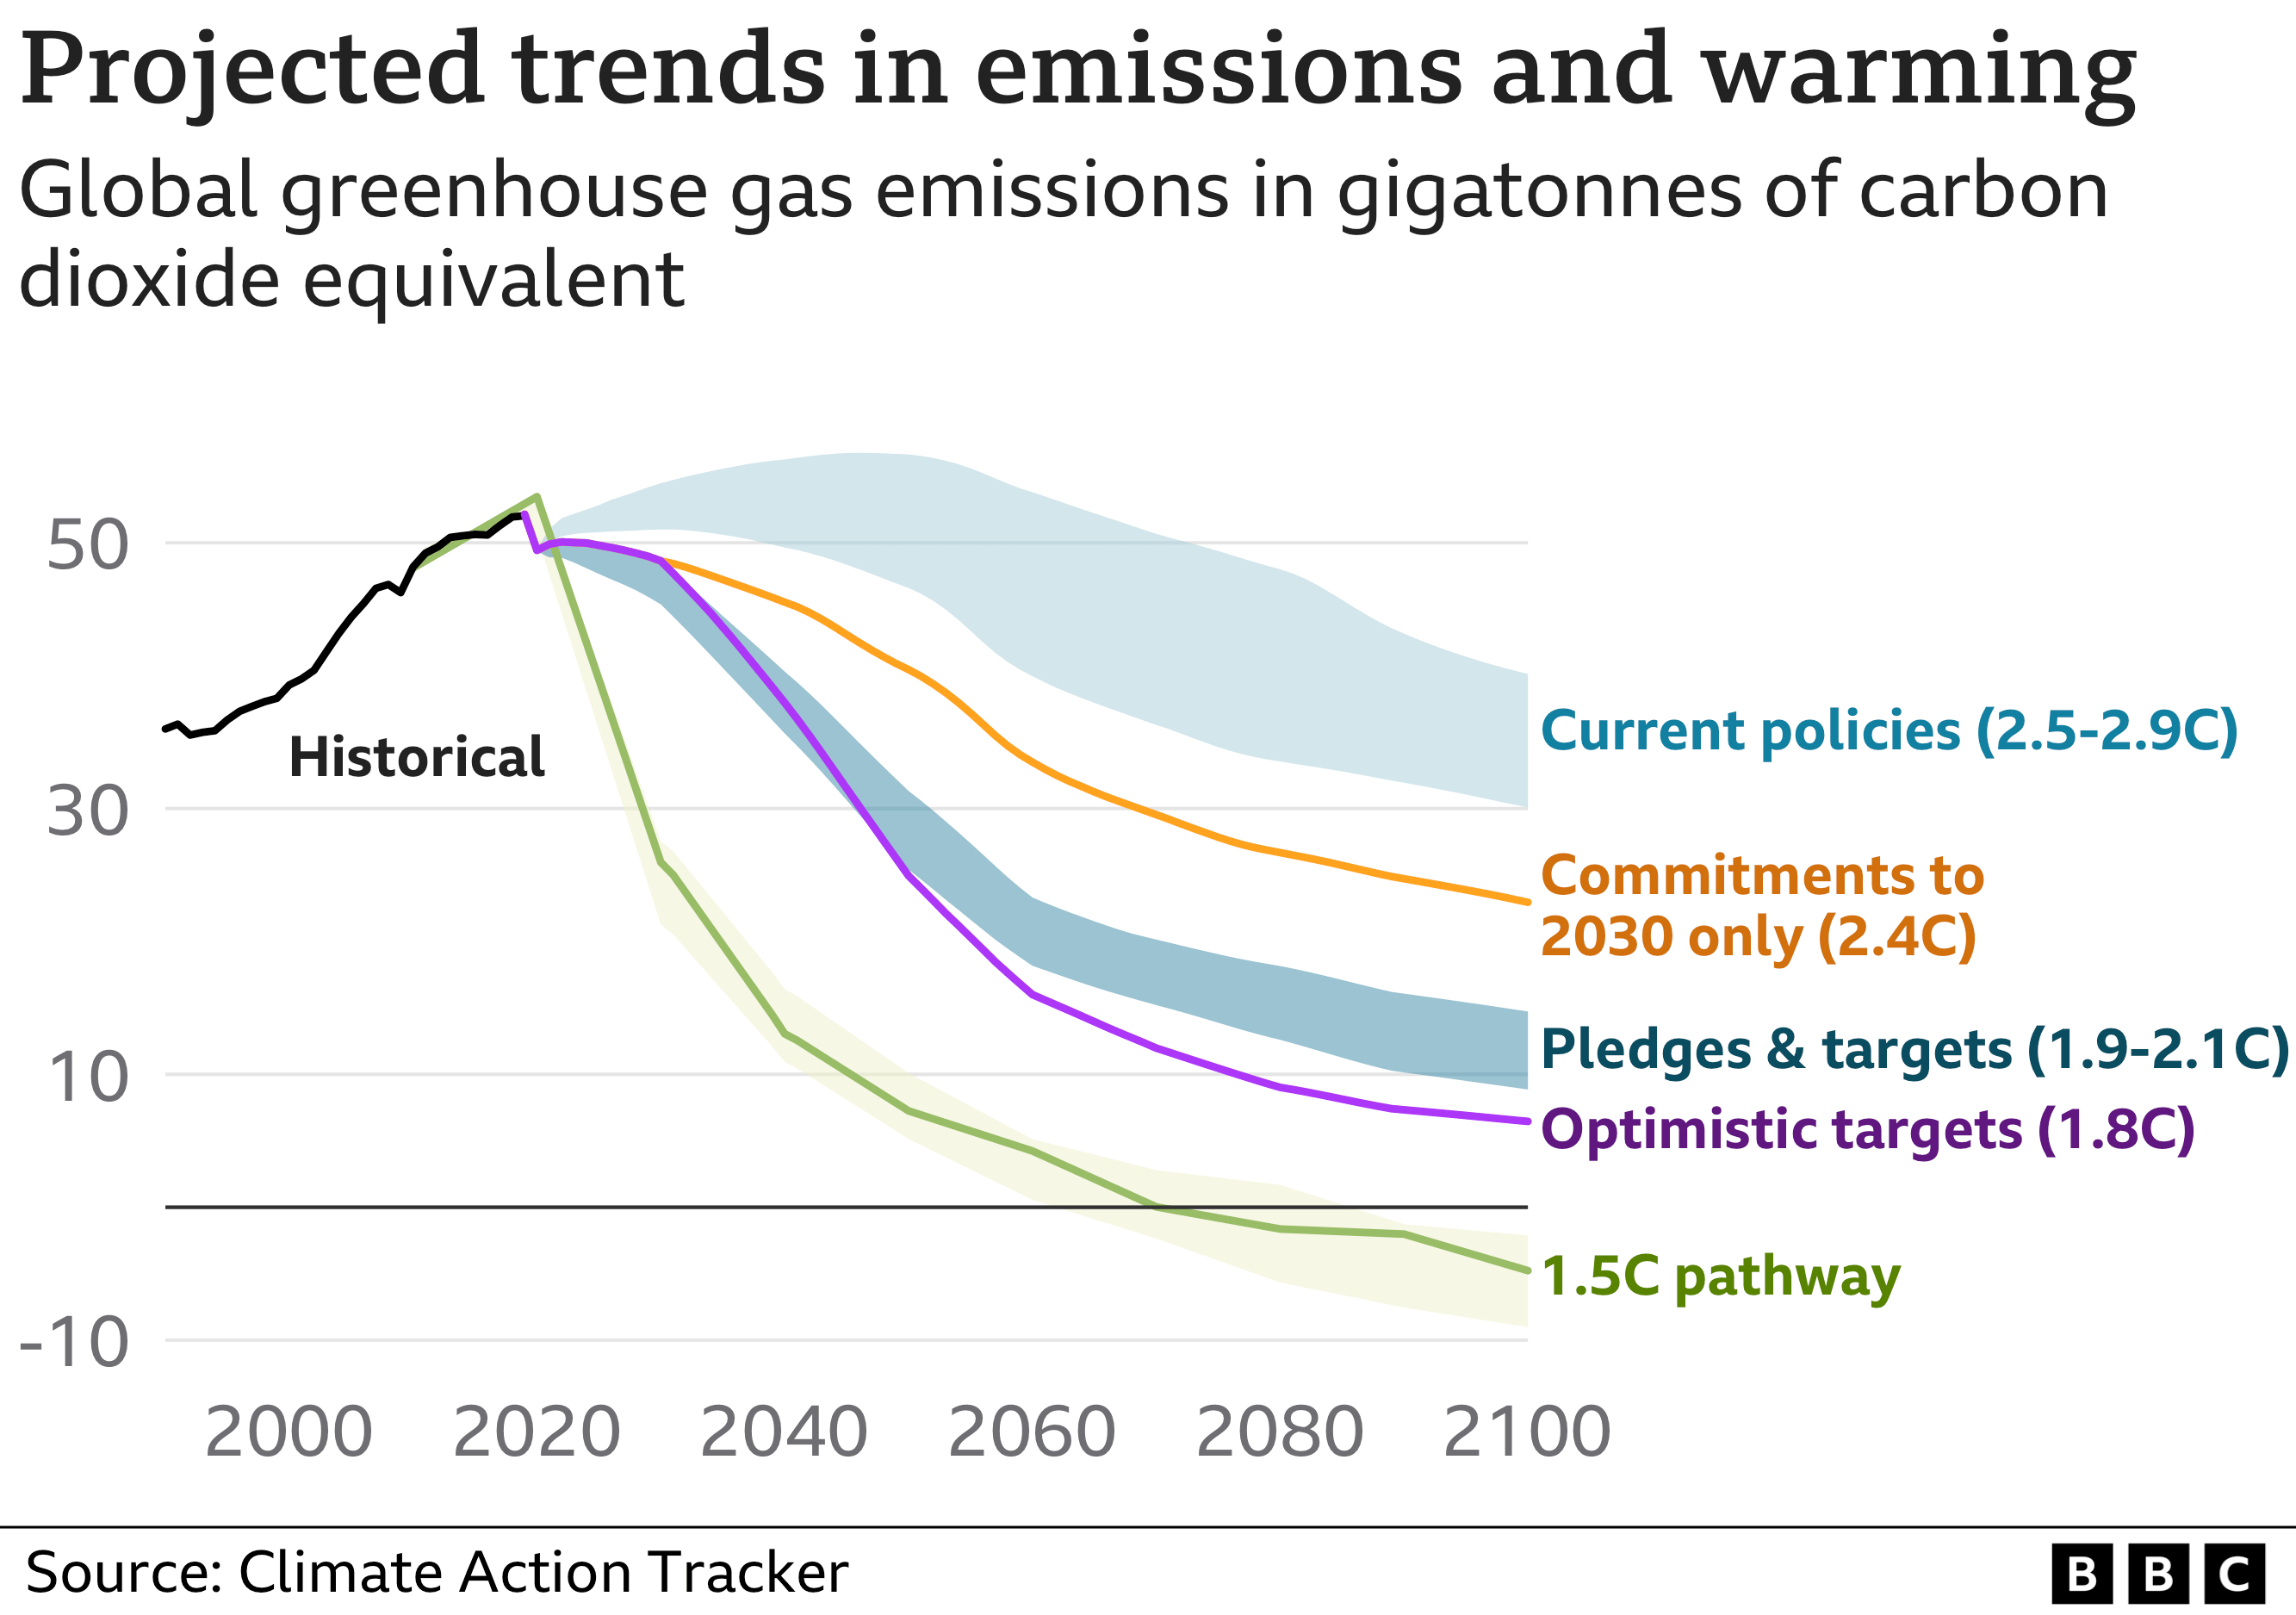 Grafik, die die prognostizierten Trends bei den Emissionen und der Erwärmung zeigt. Bei der derzeitigen Politik steuert die Welt auf eine Erwärmung von etwa 2,7 °C bis zum Jahr 2100 zu.